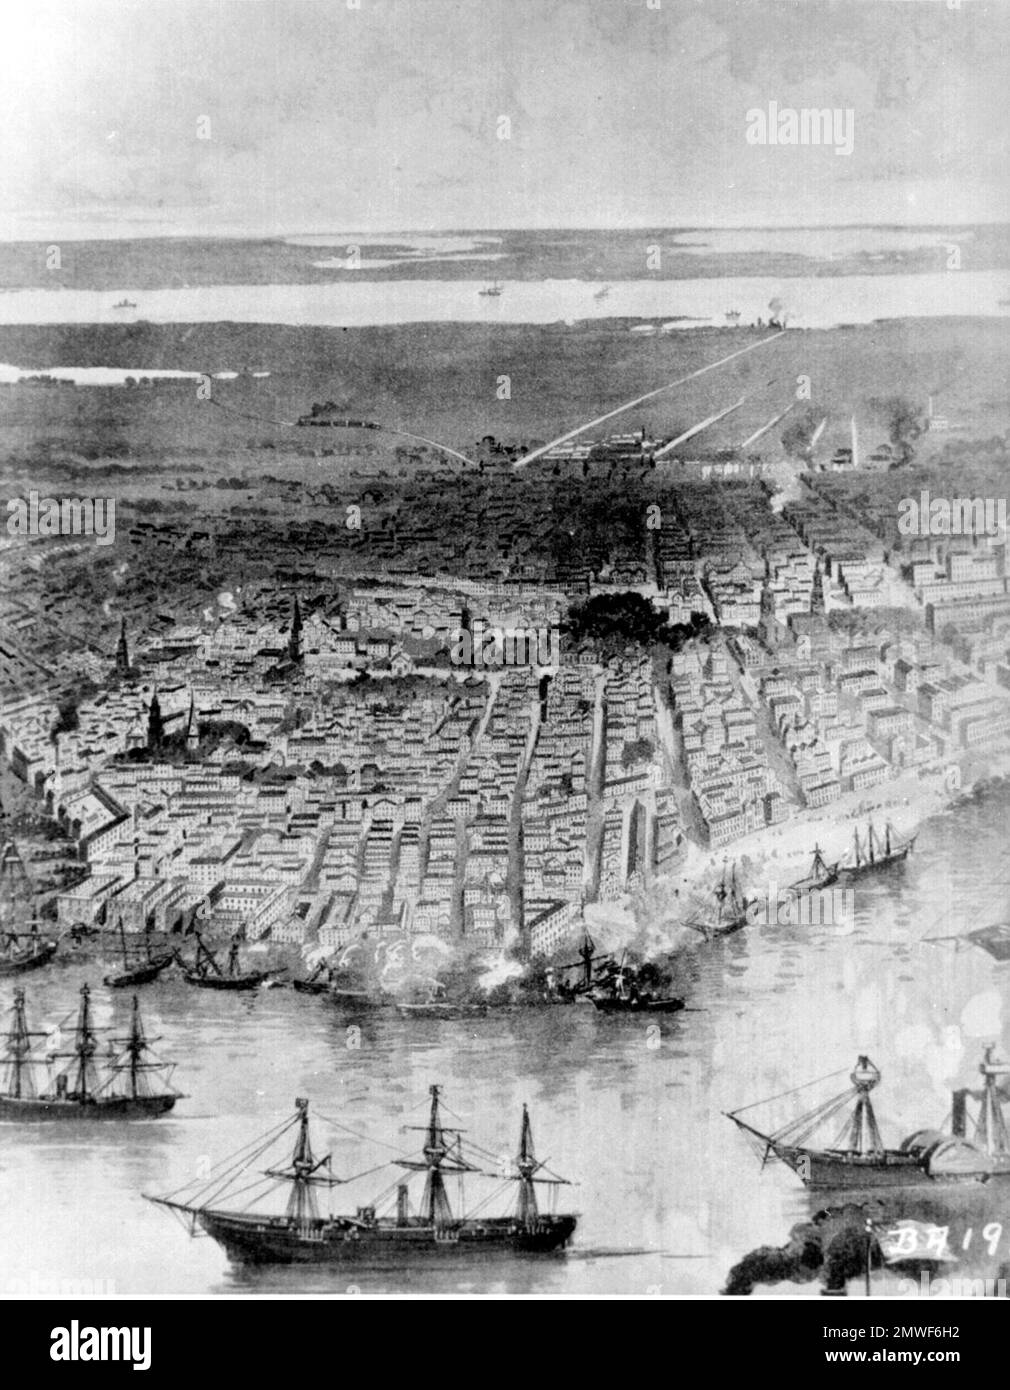 Die Schlacht von Forts Jackson und St. Philip (18.-28. April 1862) war der entscheidende Kampf um den Besitz von New Orleans im Amerikanischen Bürgerkrieg. Die beiden Festungen der Konföderierten am Mississippi südlich der Stadt wurden von einer Flotte der Union Navy angegriffen. Die Bombardierung der Festungen war größtenteils wirkungslos, aber der Übergang der unionistischen Flotte in der Nacht des 24. April 1862 führte zu einer Schlacht, in der die konföderierte Flotte zerstört wurde, und New Orleans stürzte ohne weitere Kämpfe. Dieses Bild zeigt die Unionisten-Flotte vor Anker im Mississippi in New Orleans Ca. 1862. Stockfoto